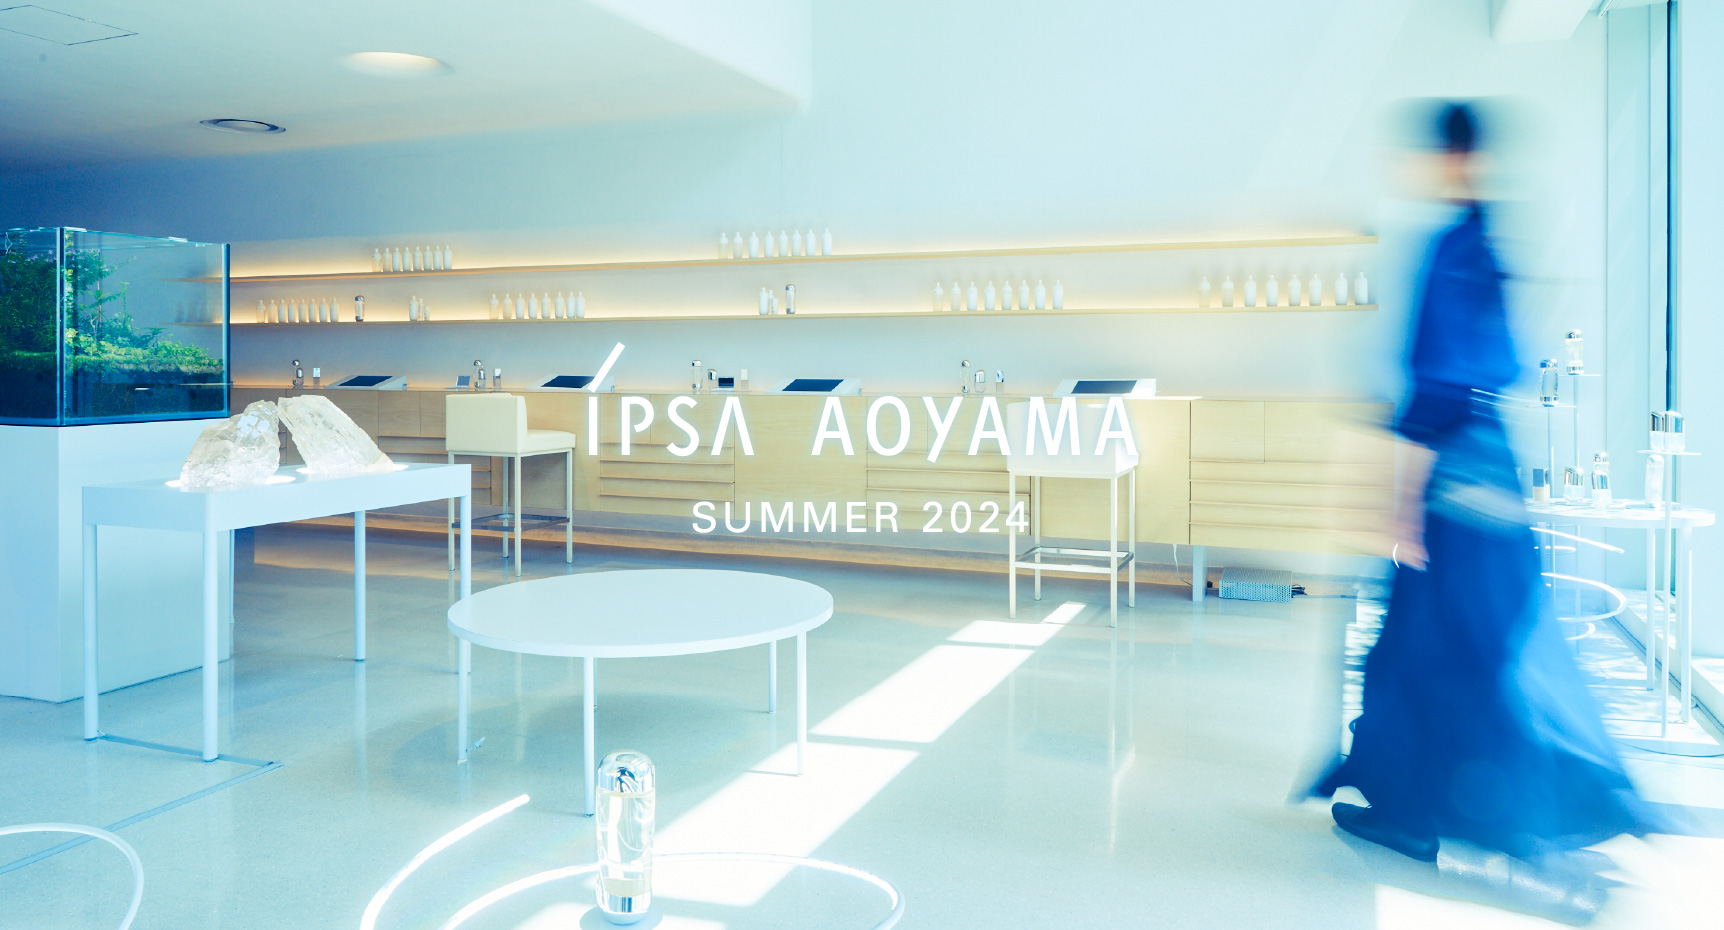 IPSA Aoyama Summer 2022